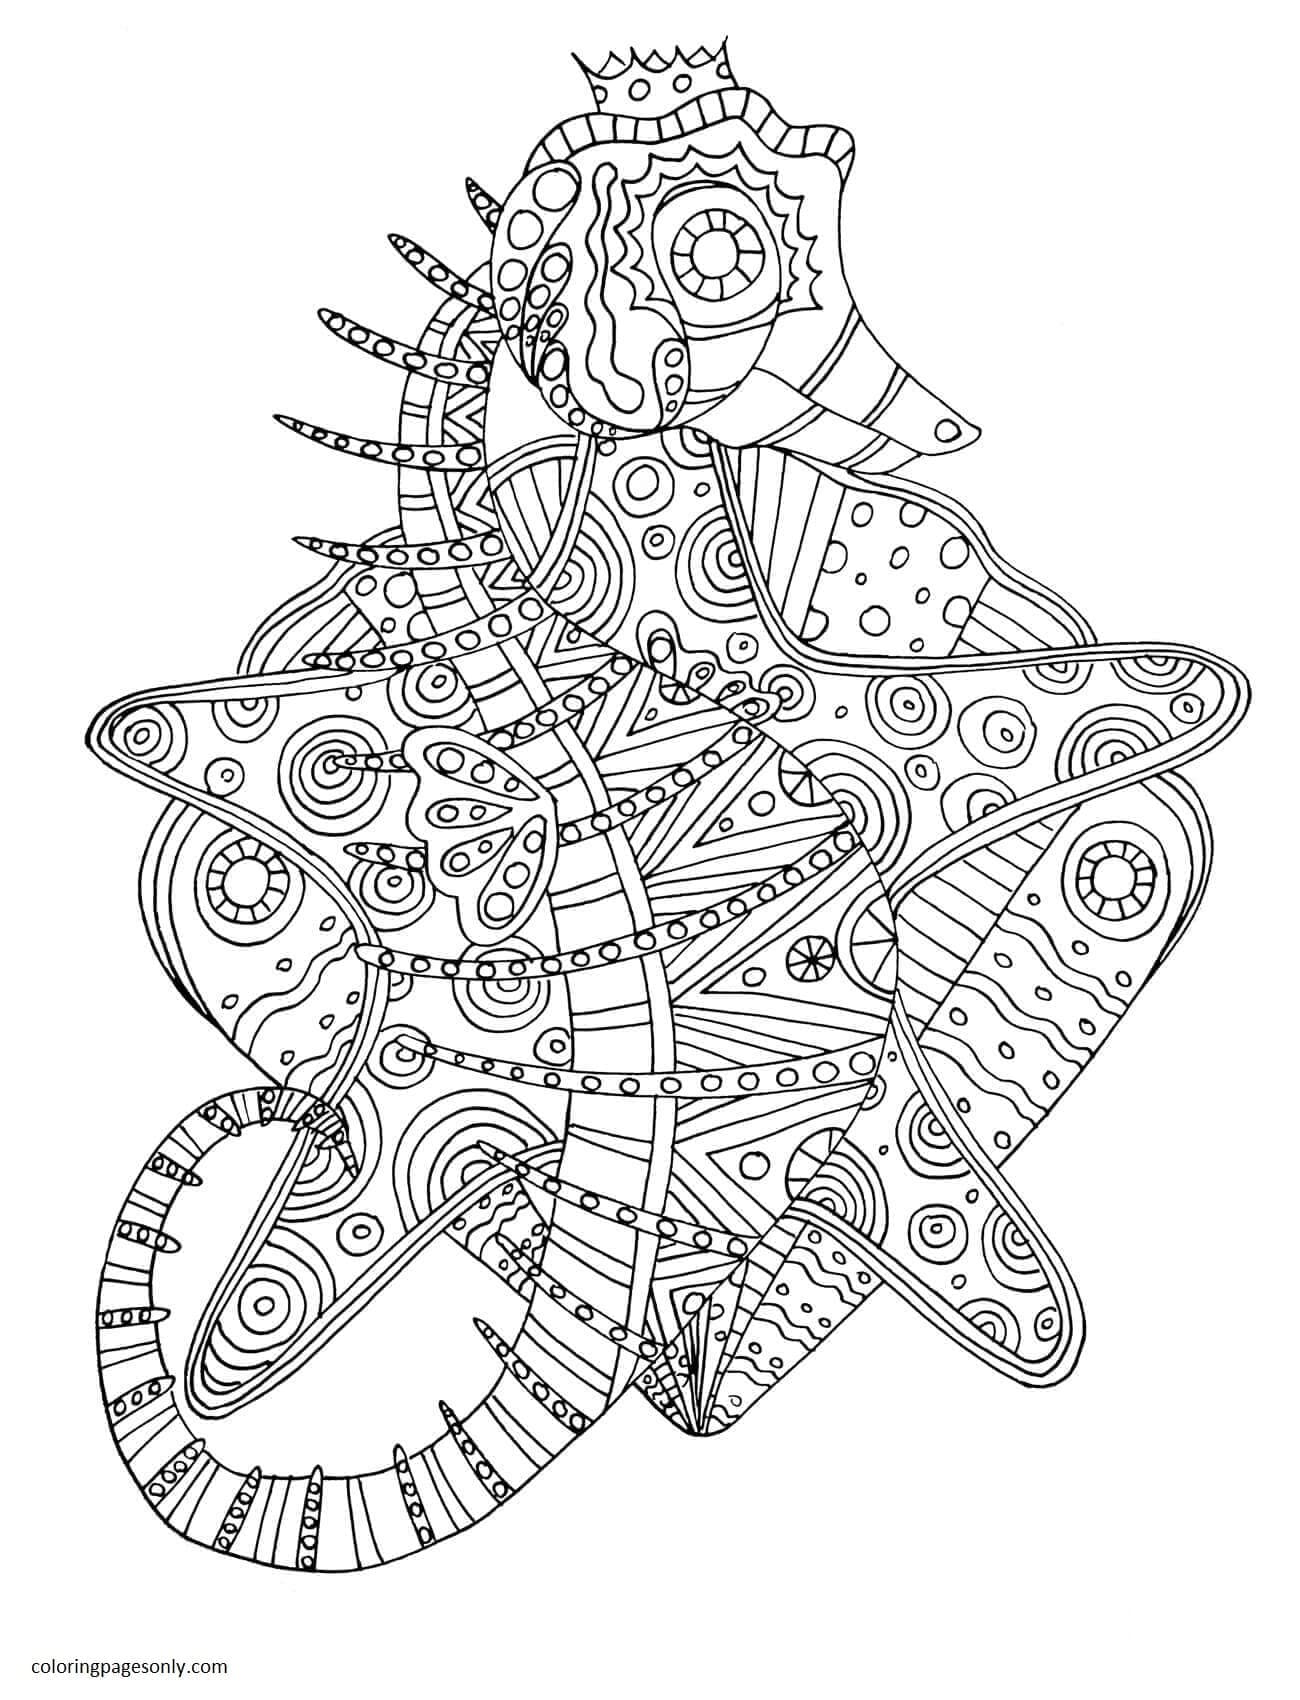 Раскраска Морской конек с племенным узором